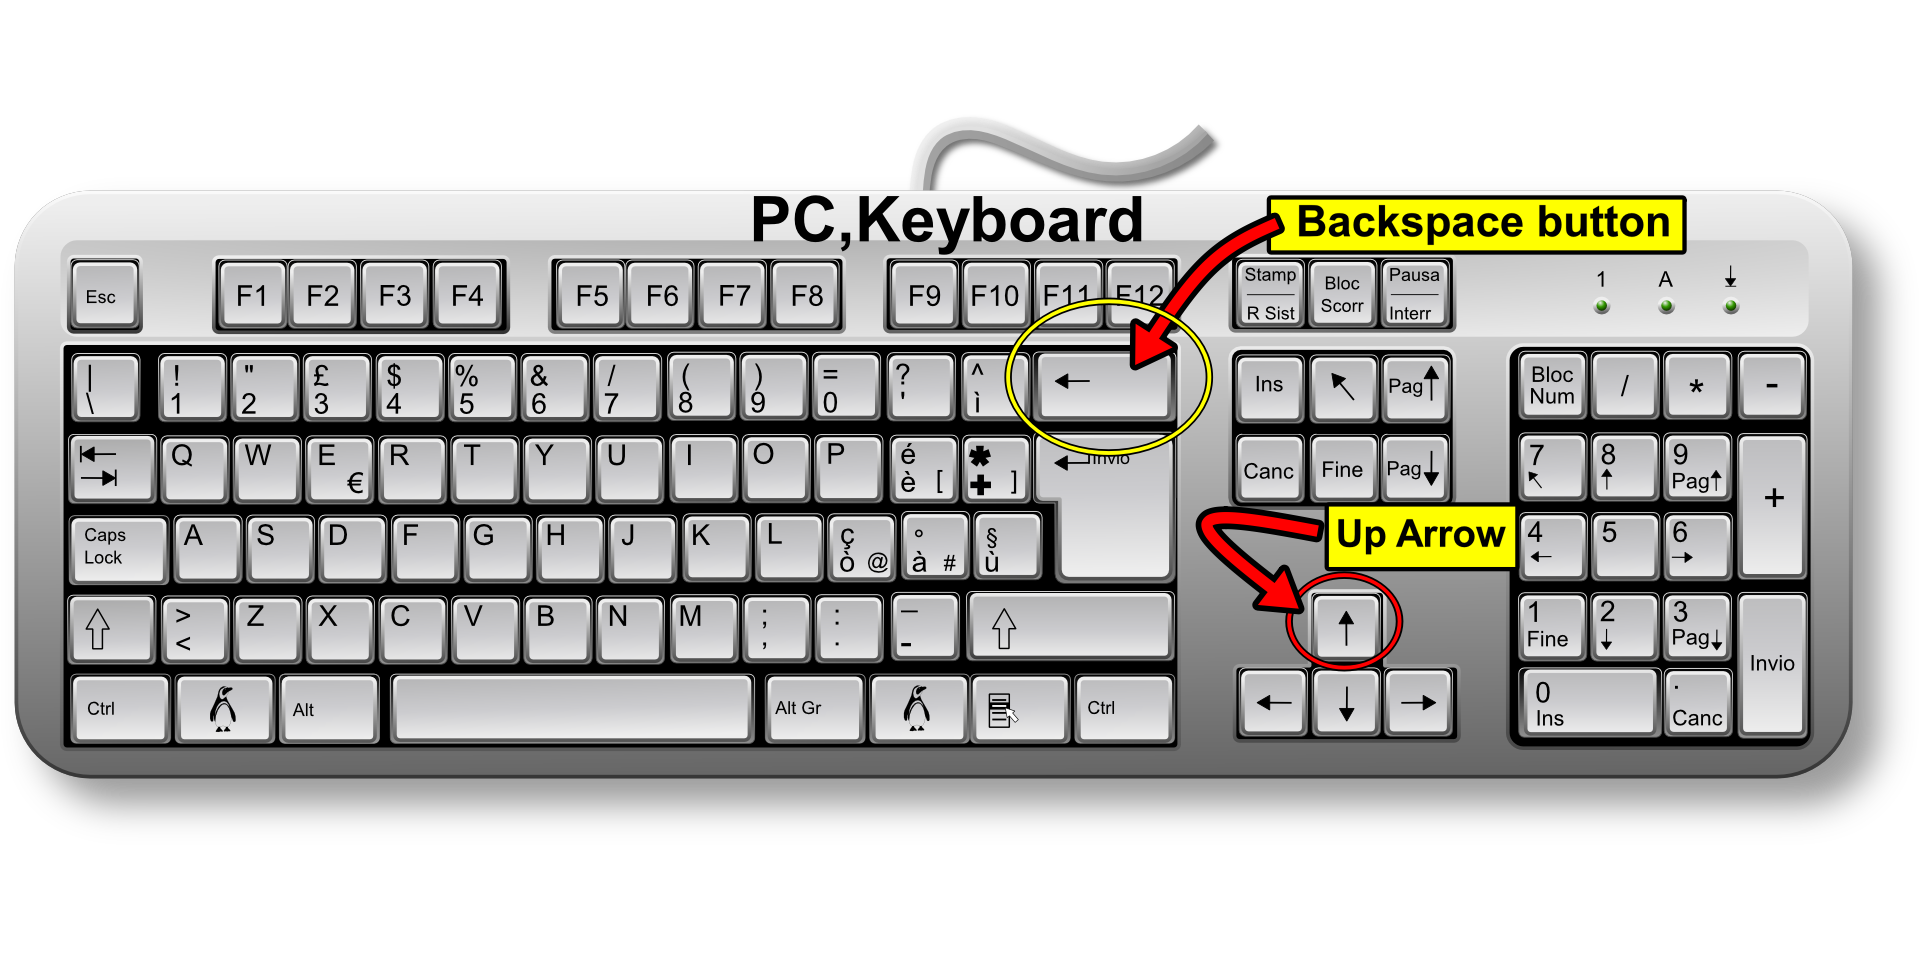 Keyboard button